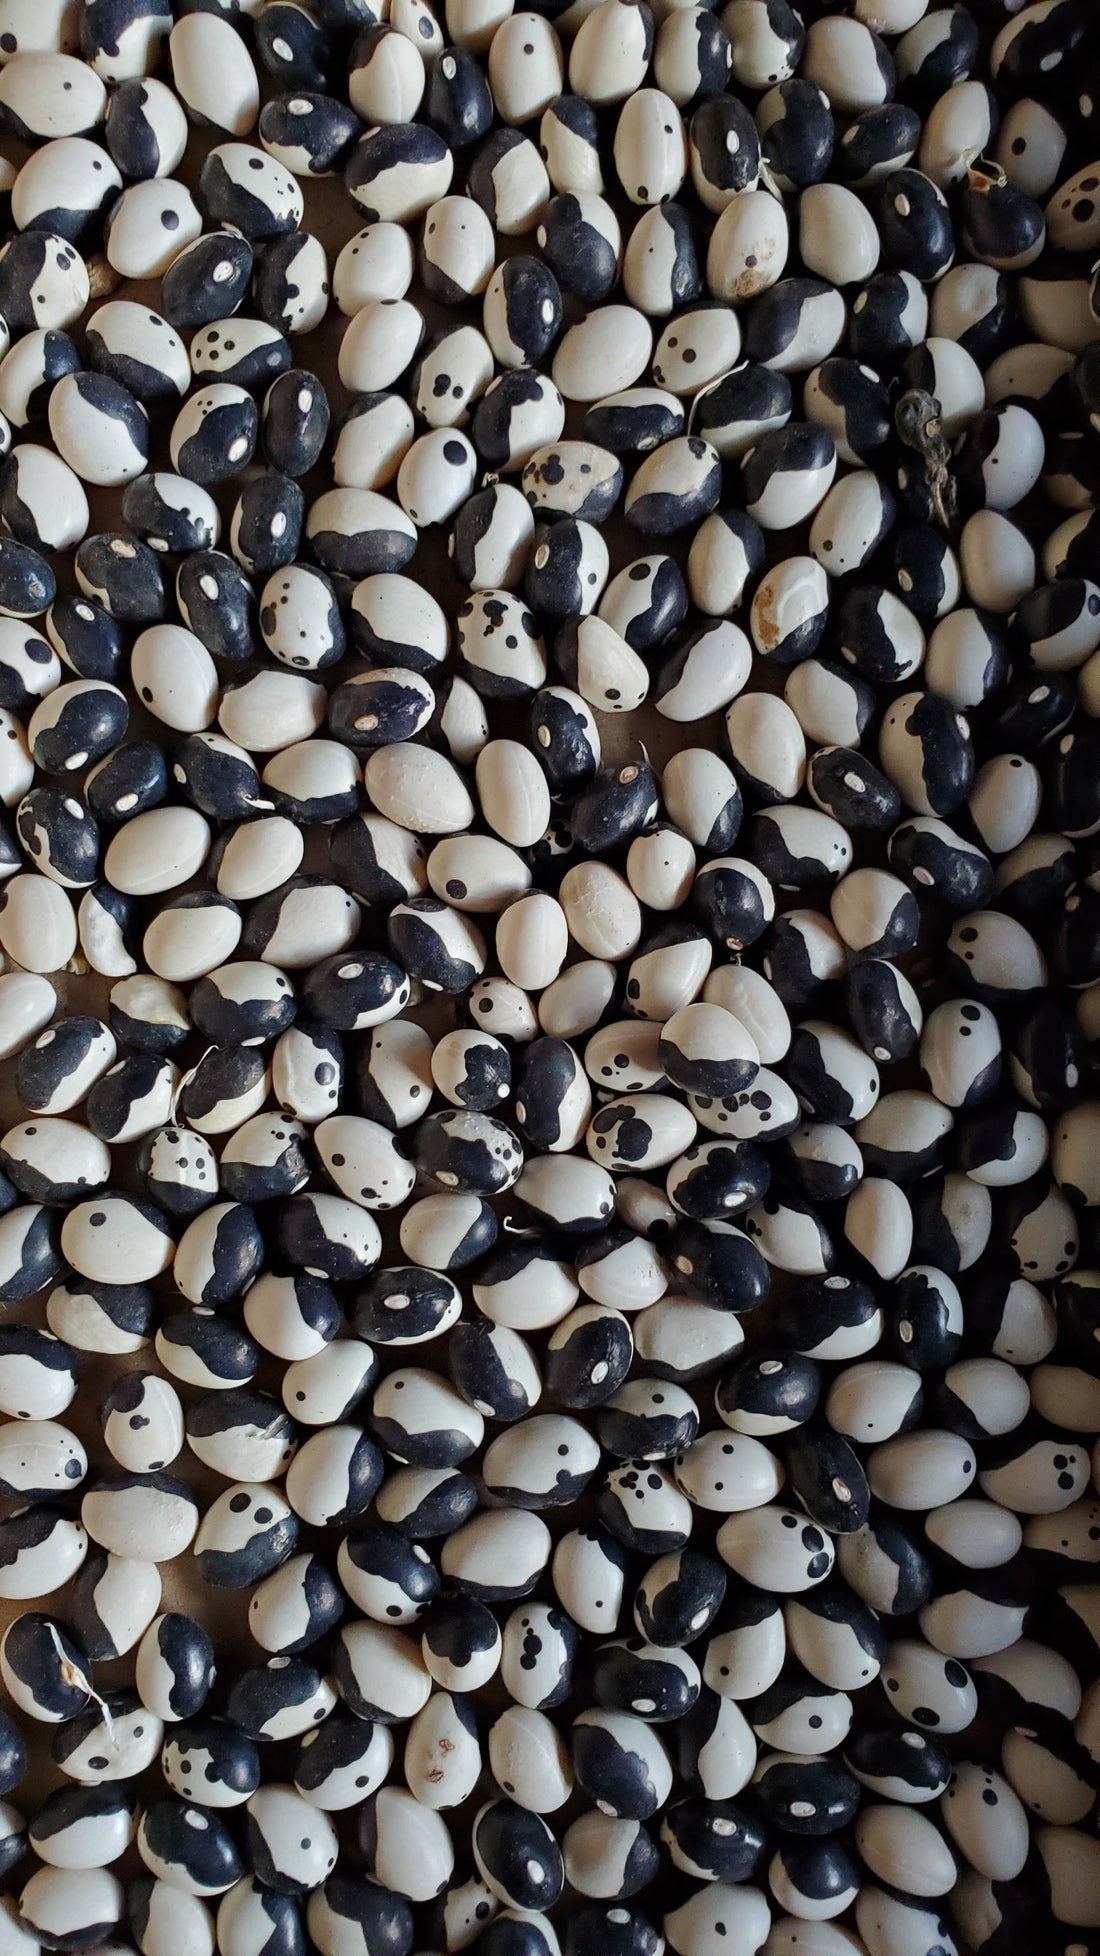 Orca Bean Seeds